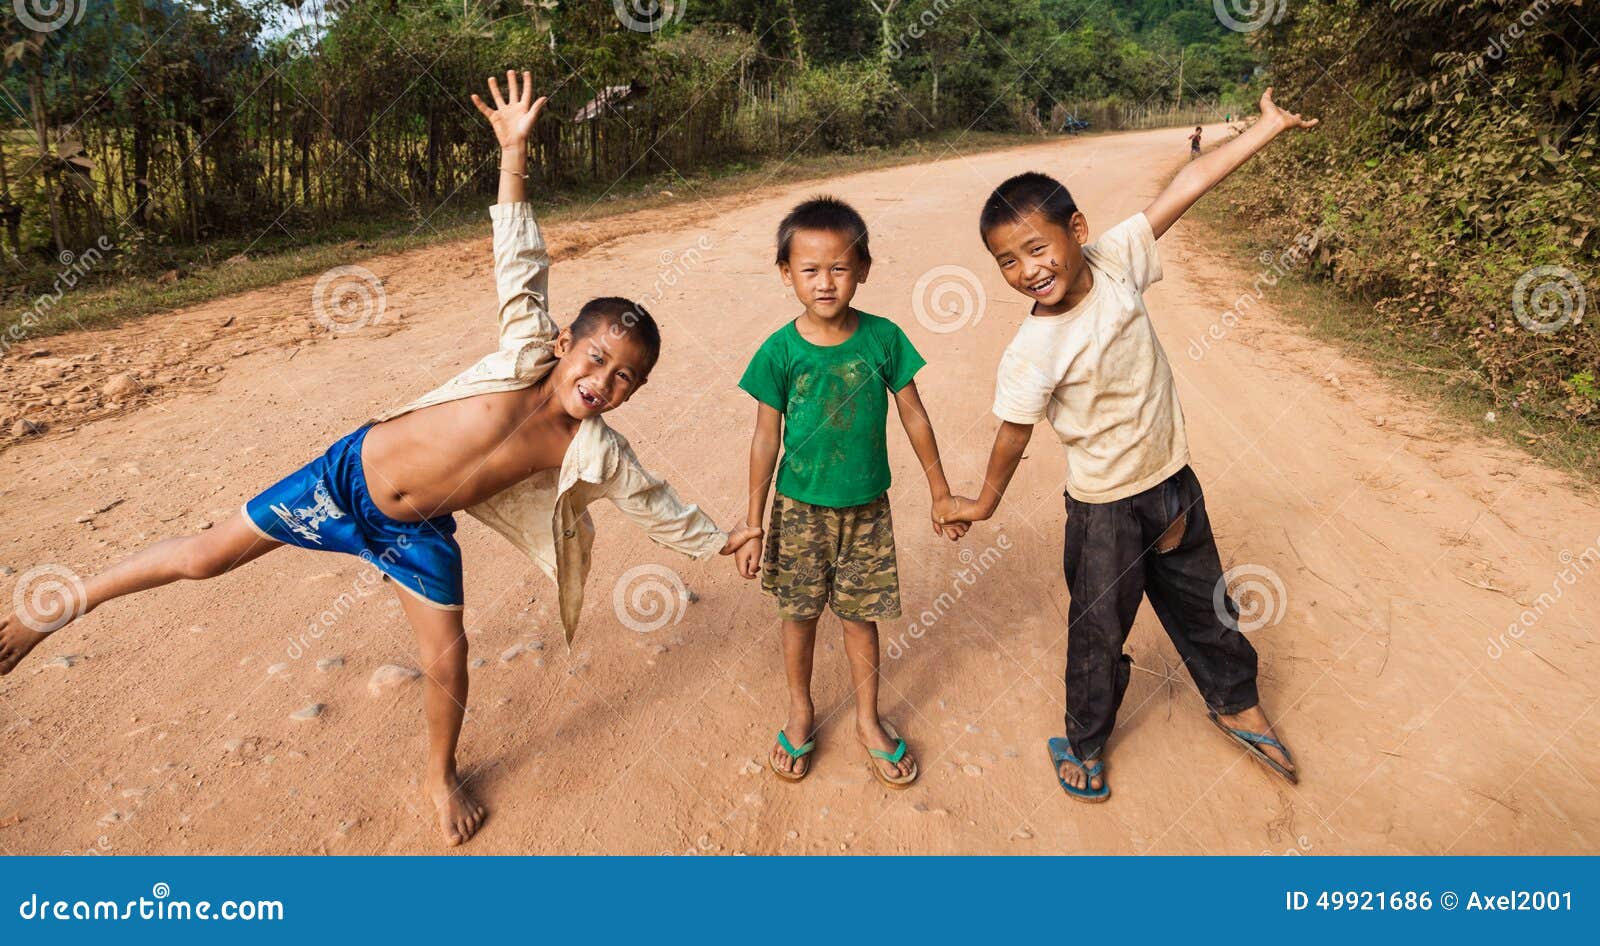 VANG VIENG, ЛАОС - 9-ОЕ НОЯБРЯ 2013: Неопознанные дети представляя на дороге в Vang Vieng, Лаосе 9-ого ноября 2013 Vang Vieng ориентированный на туризм городок в Лаосе популярном среди молодых иностранных туристов